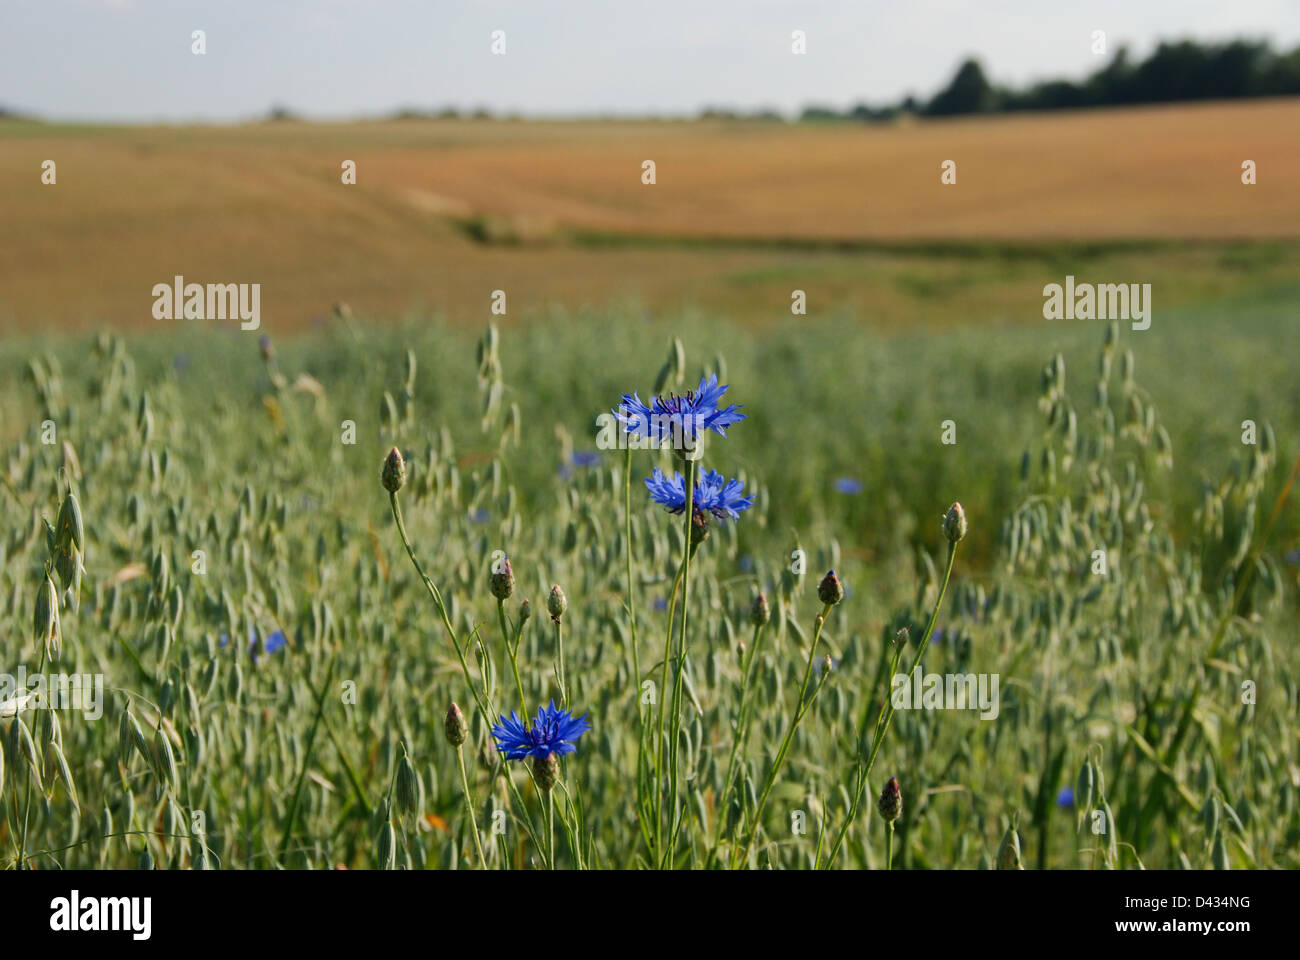 Blue cornflowers growing in a field Stock Photo